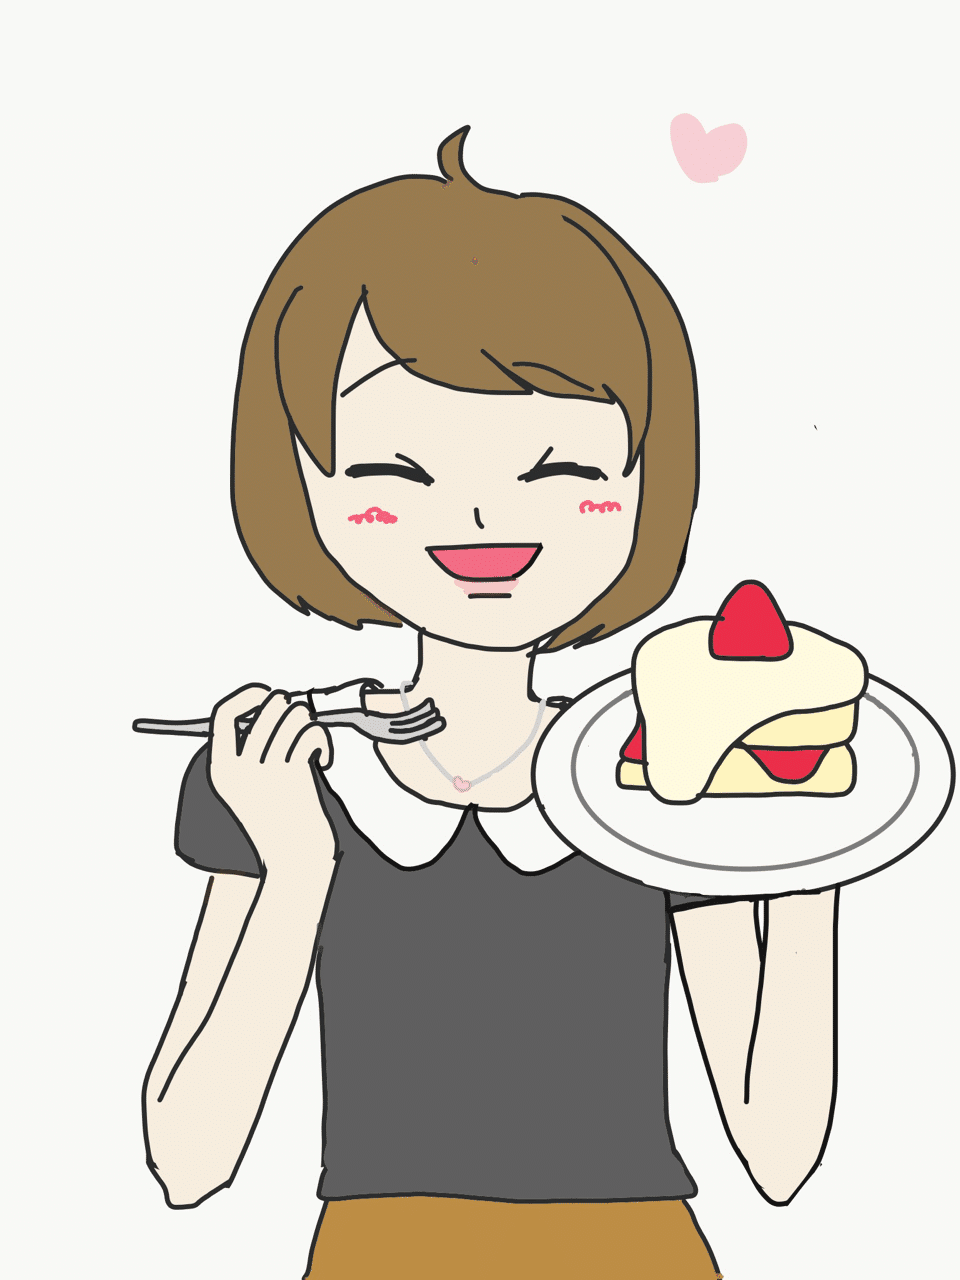 パンケーキを食べる女の子 抹茶パフェ Note